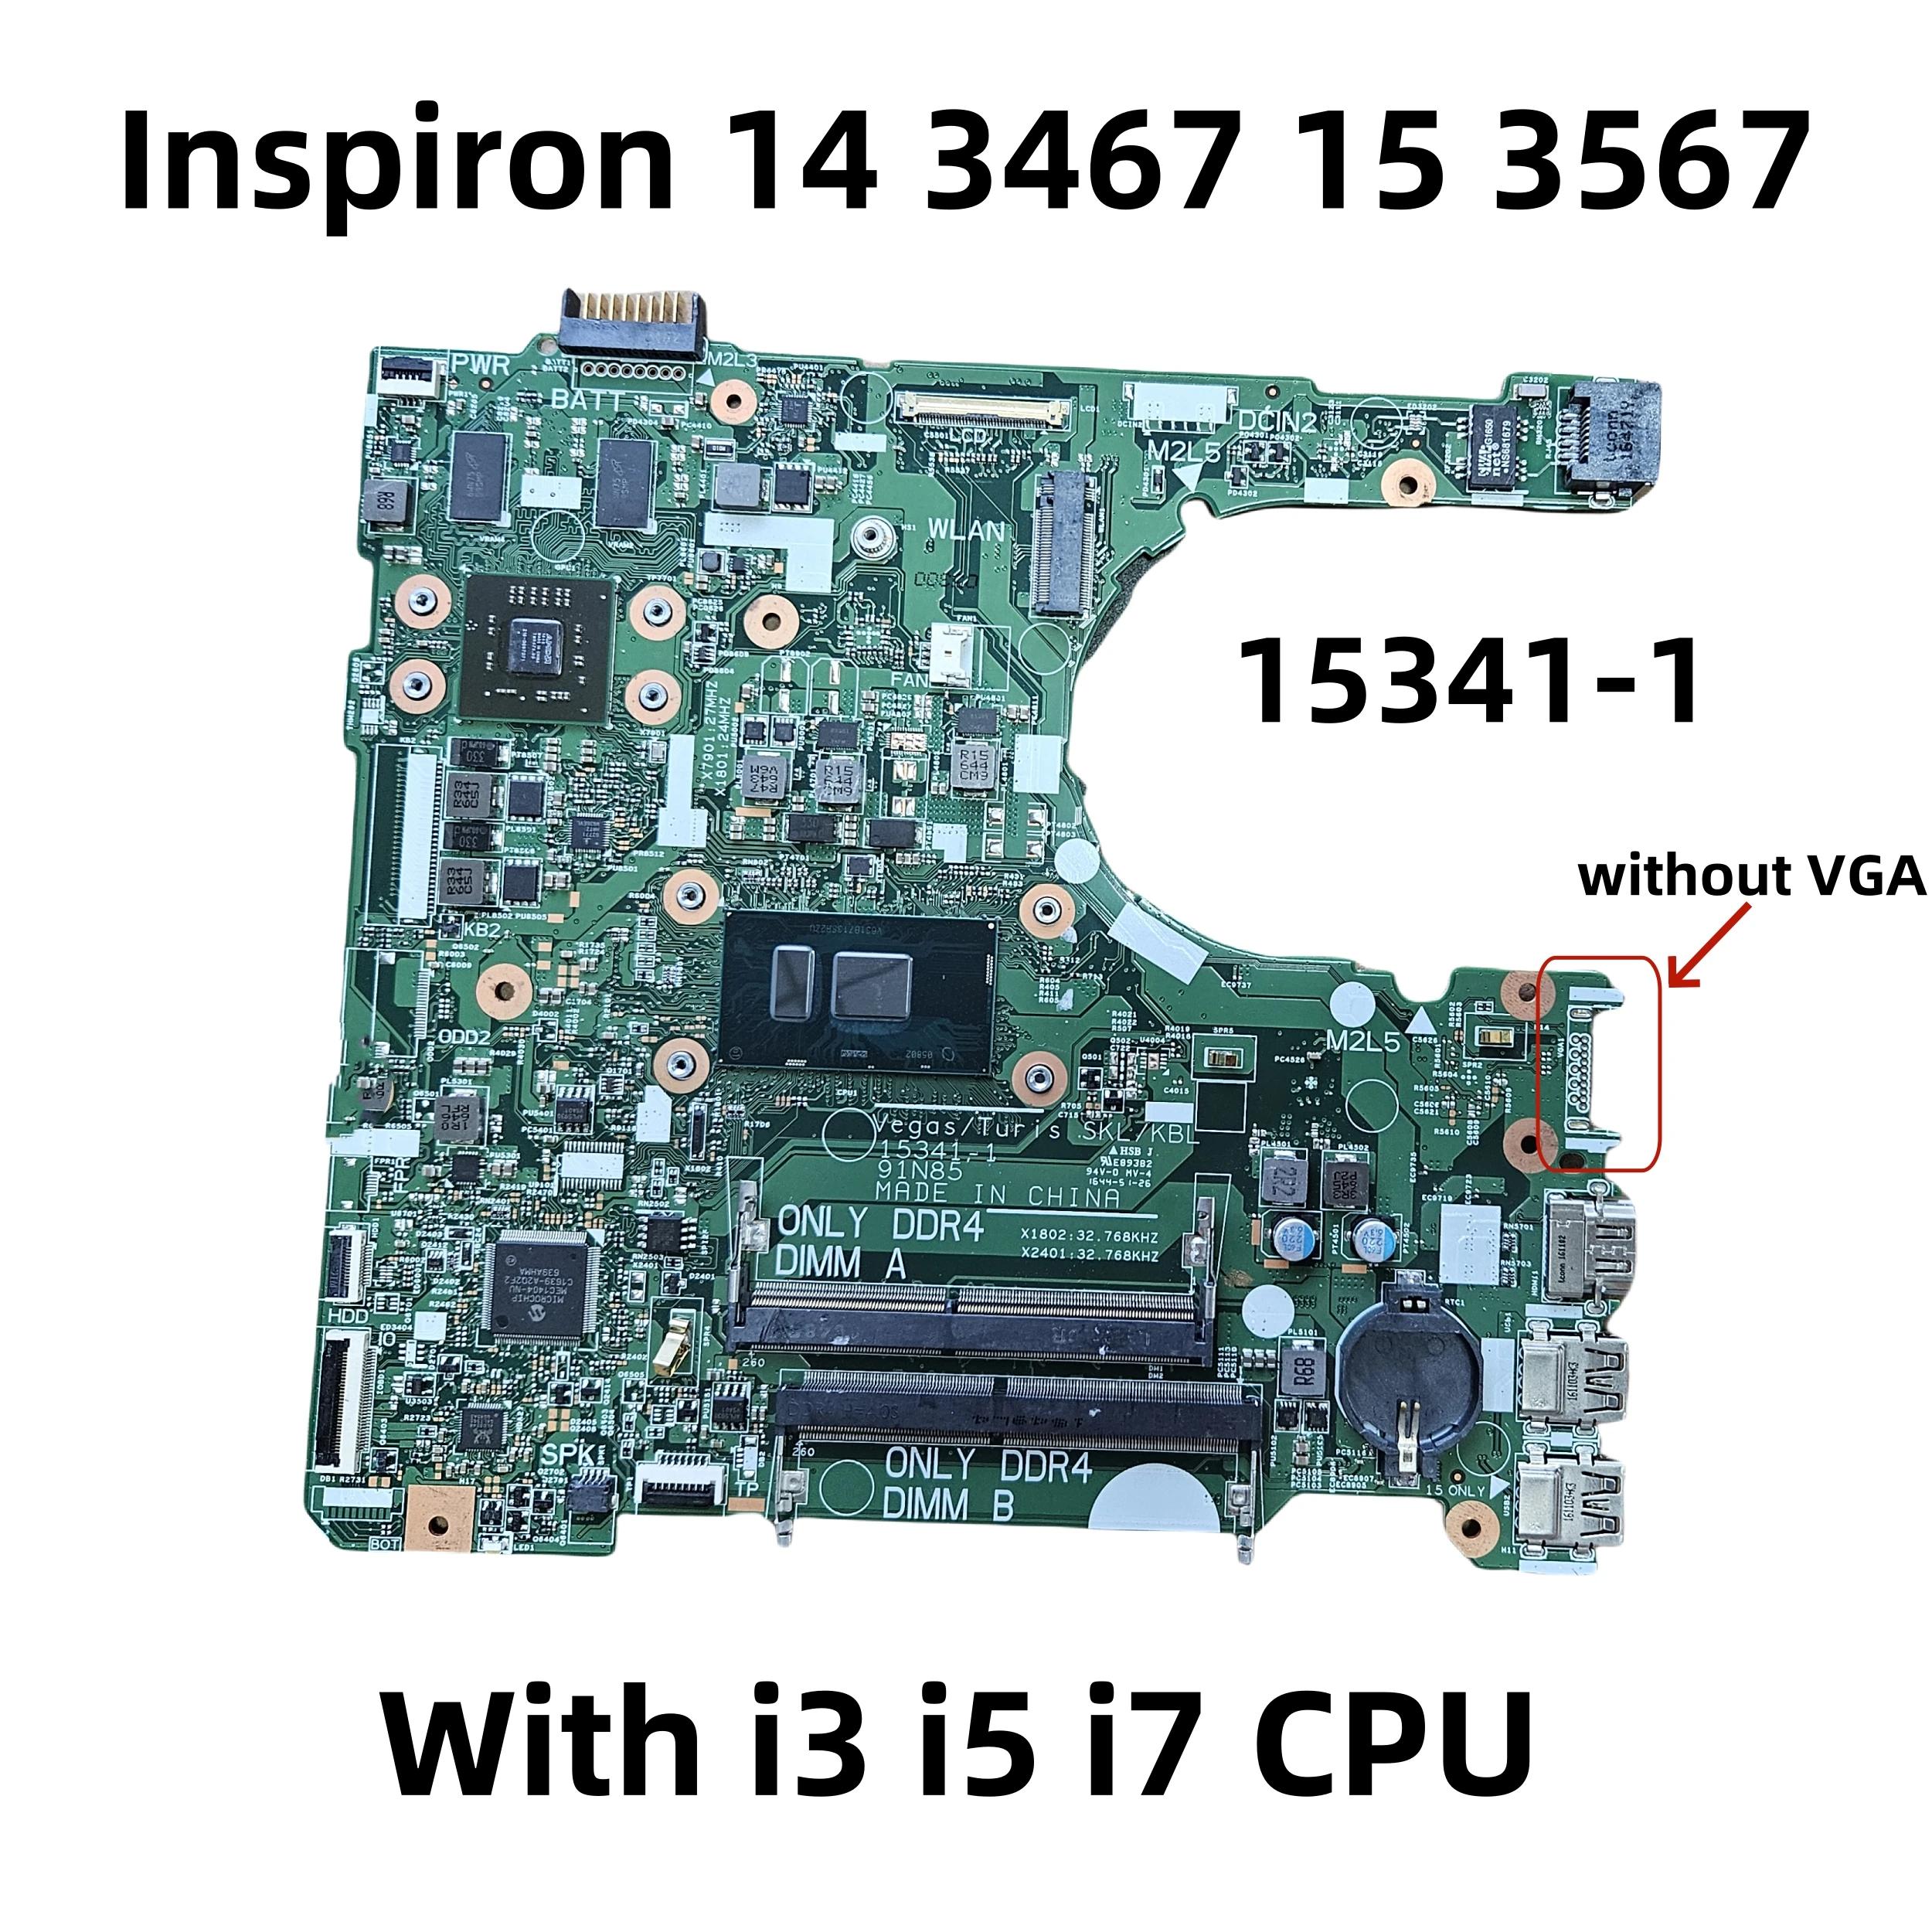  νǷ Ʈ  CN-04833J, 15341-1, 14 3467 15 3567, 04833J, i3 i5 i7 CPU R5 M330 GPU κ